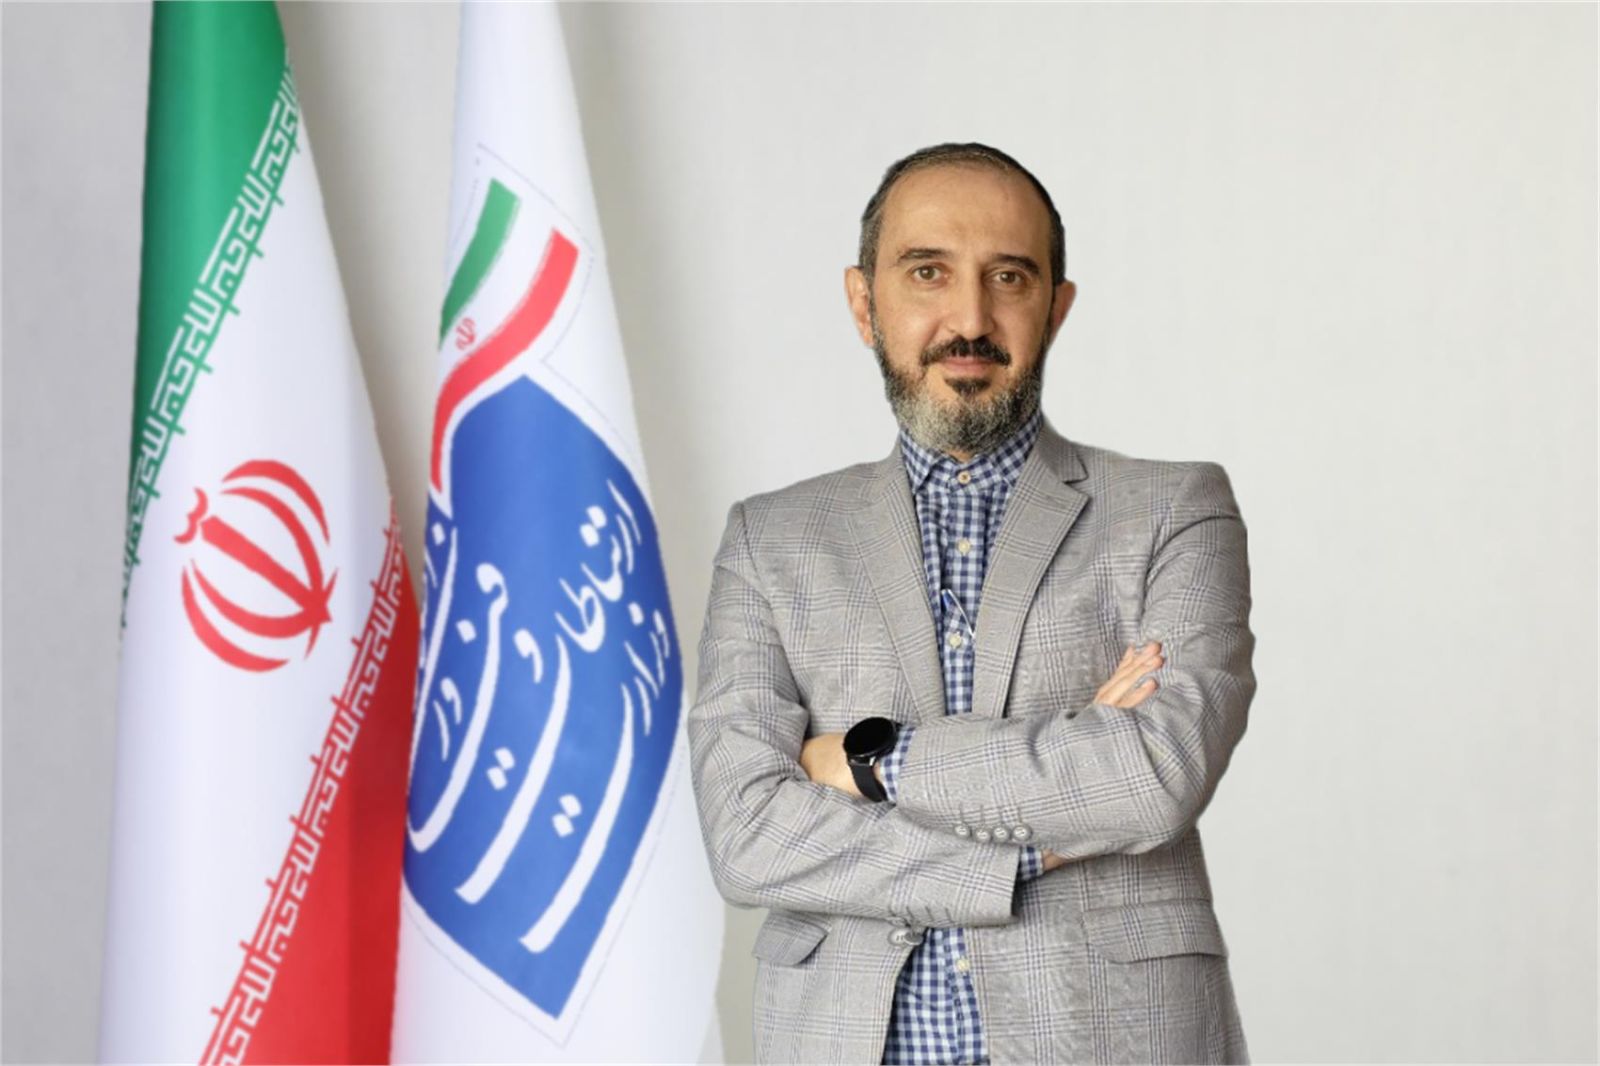 شرکت مخابرات ایران با راهبرد تحول گرایی در رفع نیازهای مشتریان همگام با فناوری حرکت می کند